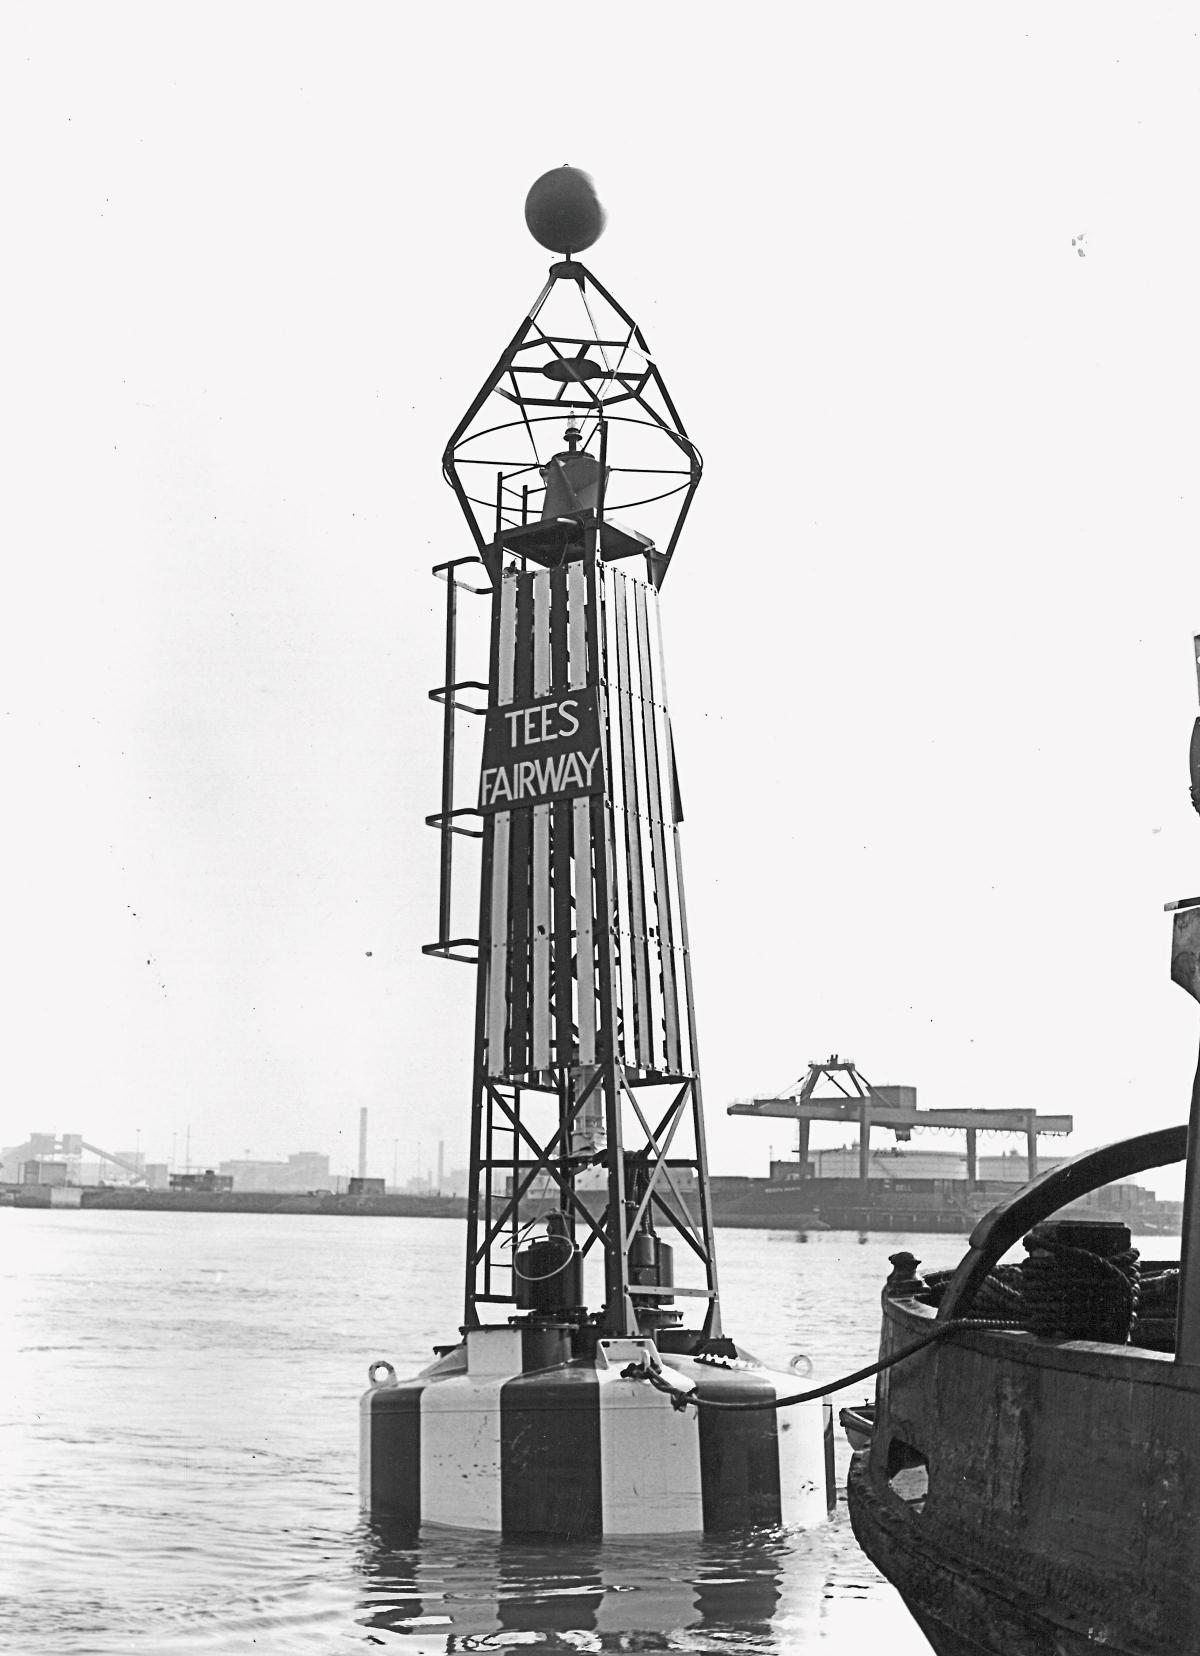 April 1982: Worlds largest navigational buoy